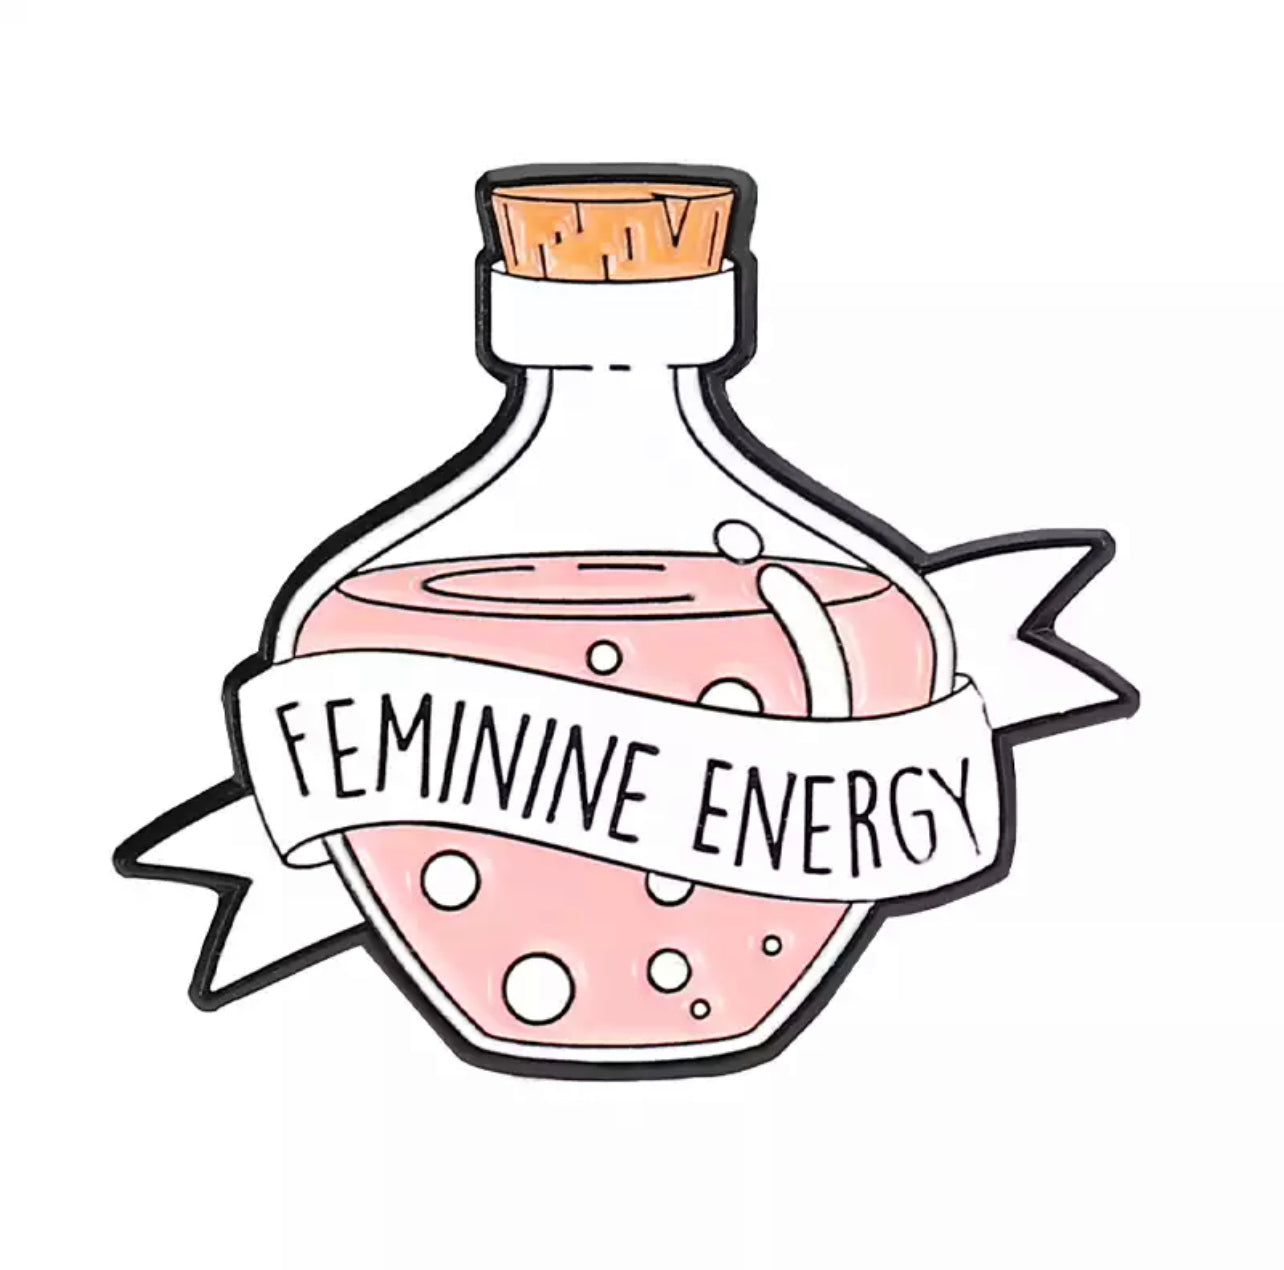 Feminine energy